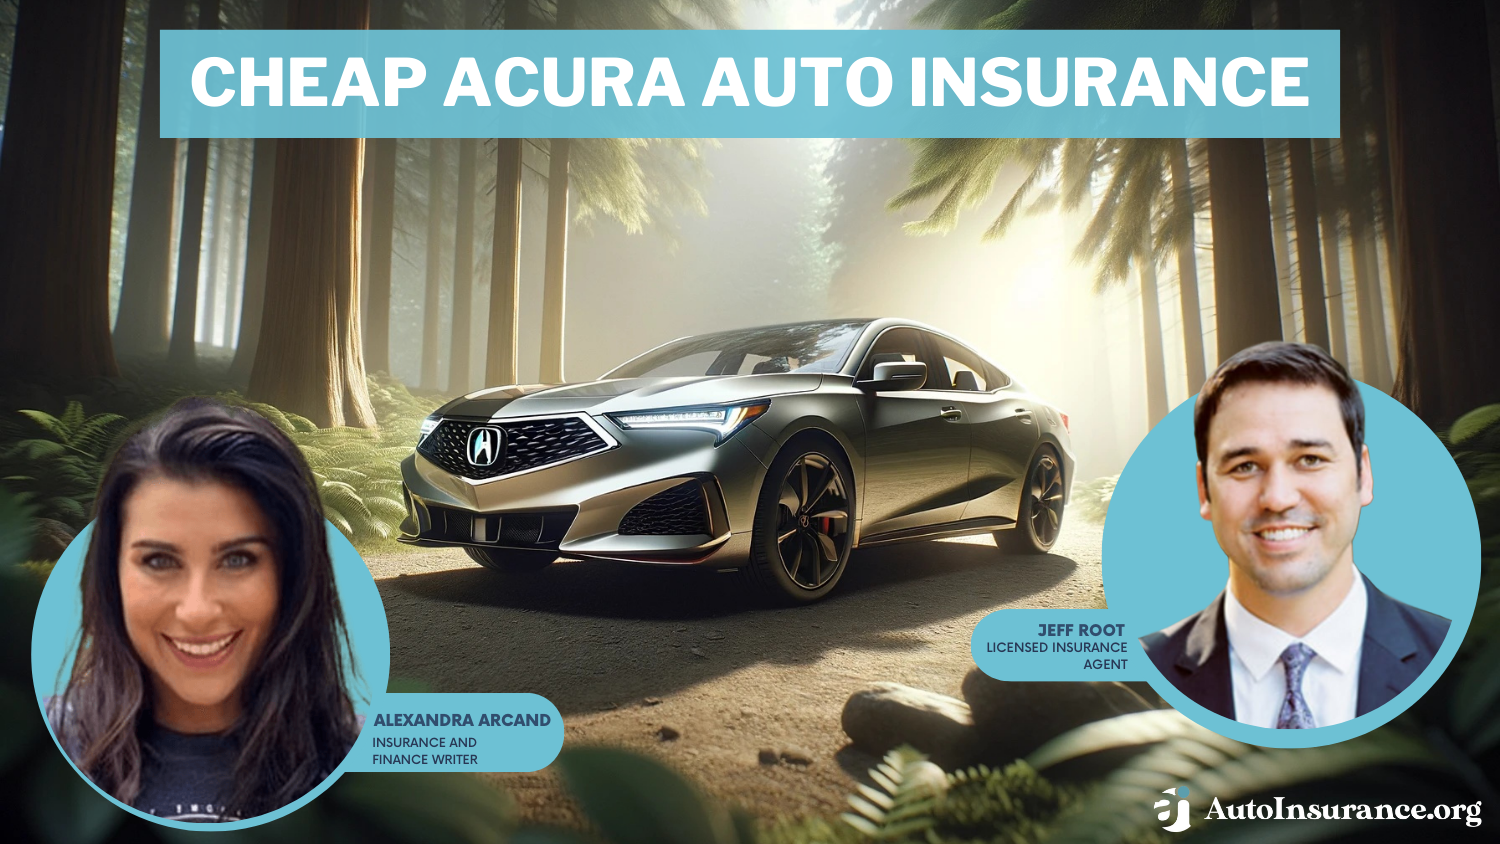 Cheap Acura Auto Insurance: Erie, Geico, AAA